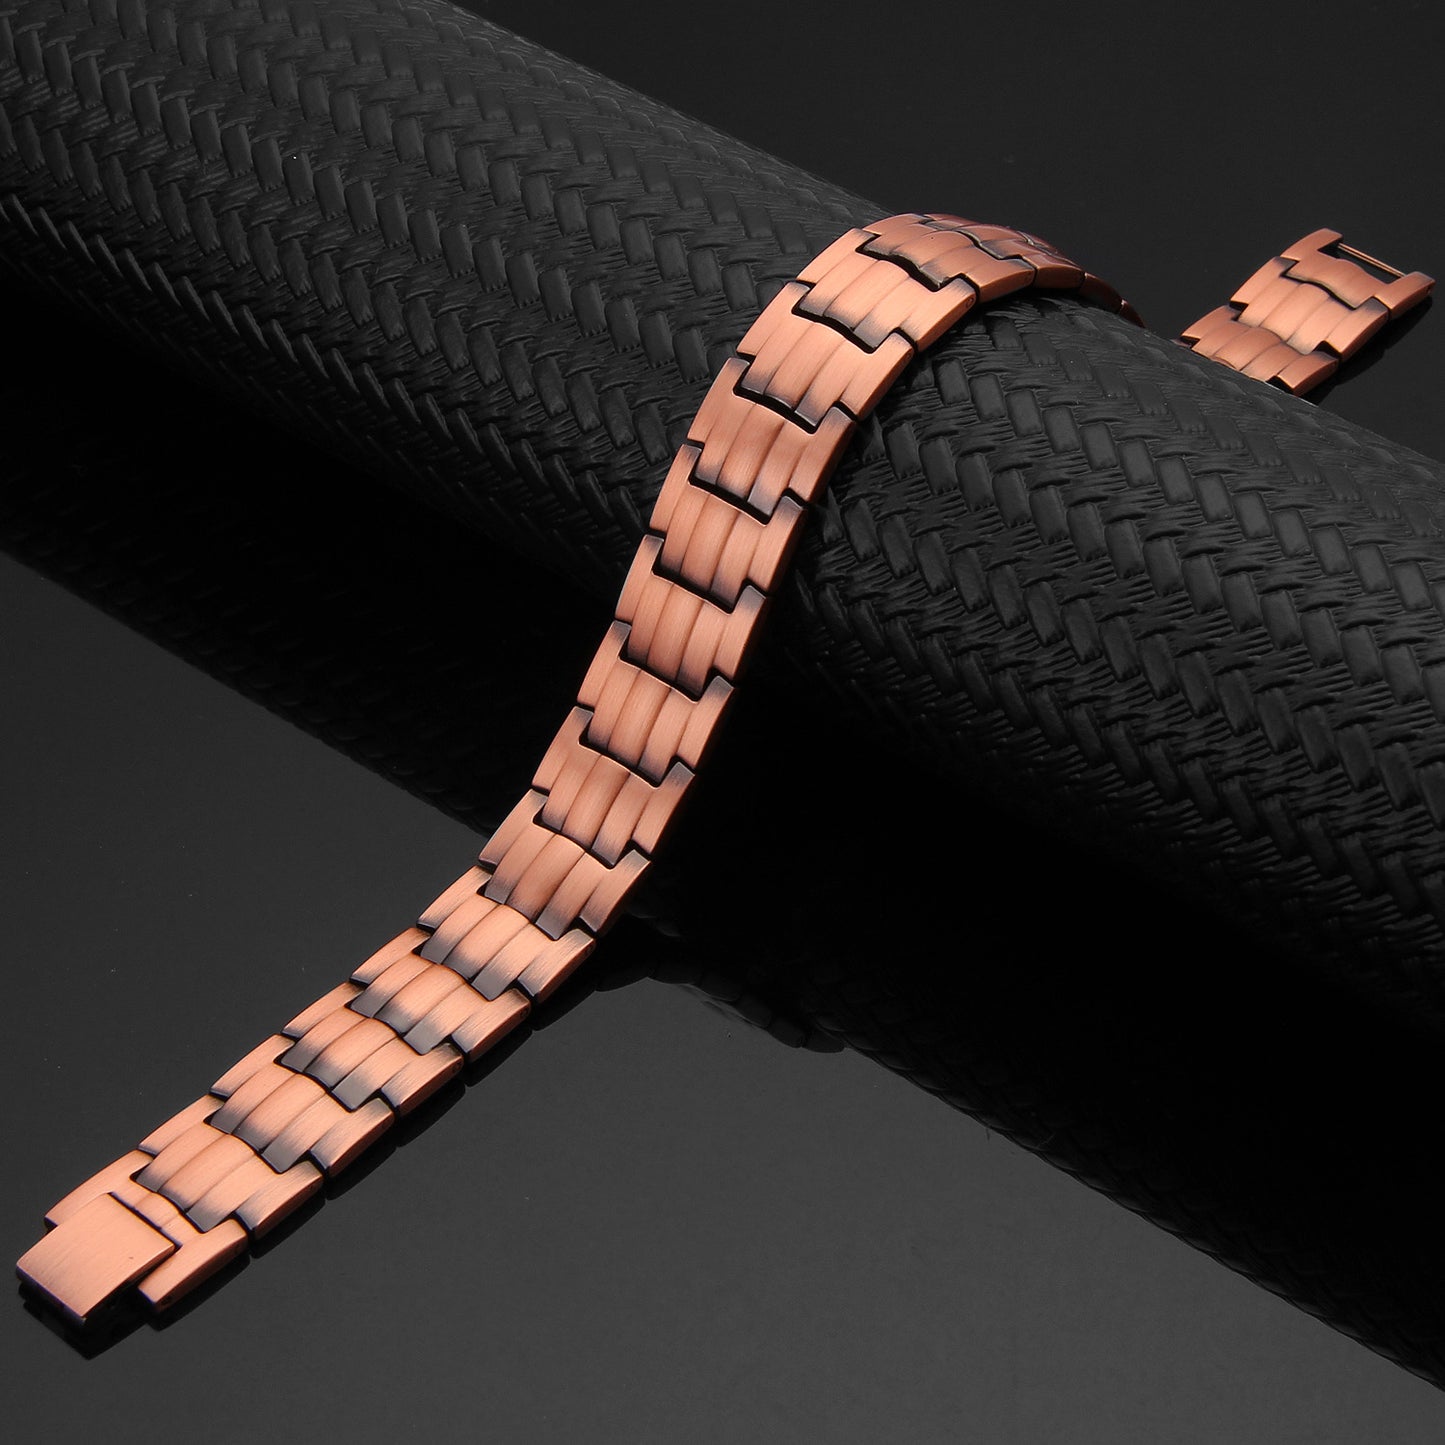 CL09 100% Pure Copper Magnetic Bracelet/anklet 6 elements 225x15mm